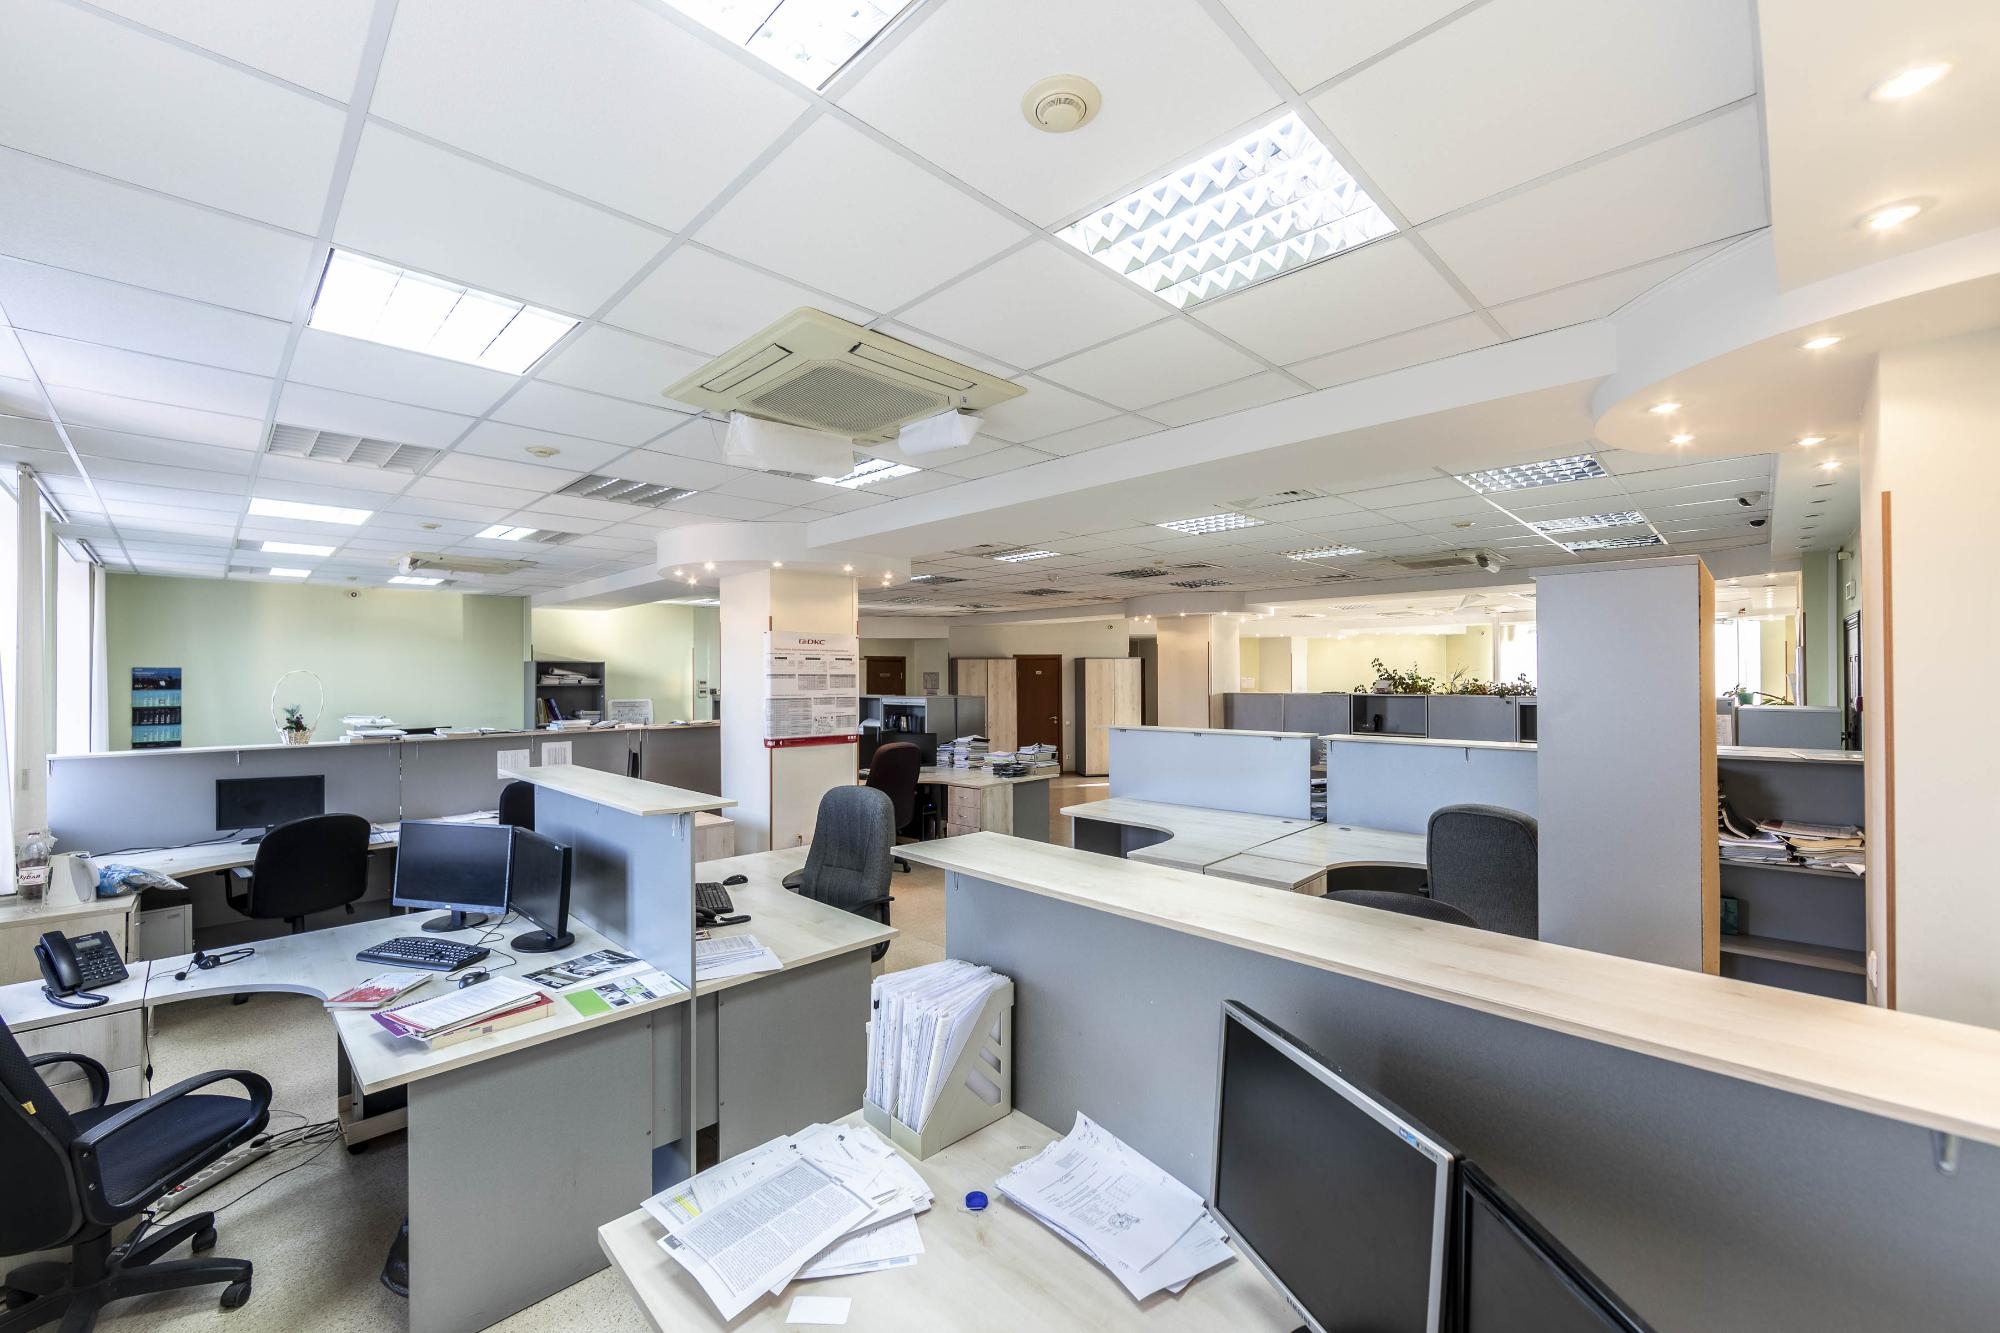 Аренда офиса в Чите: комплексный гид по выбору идеального места для успешной работы